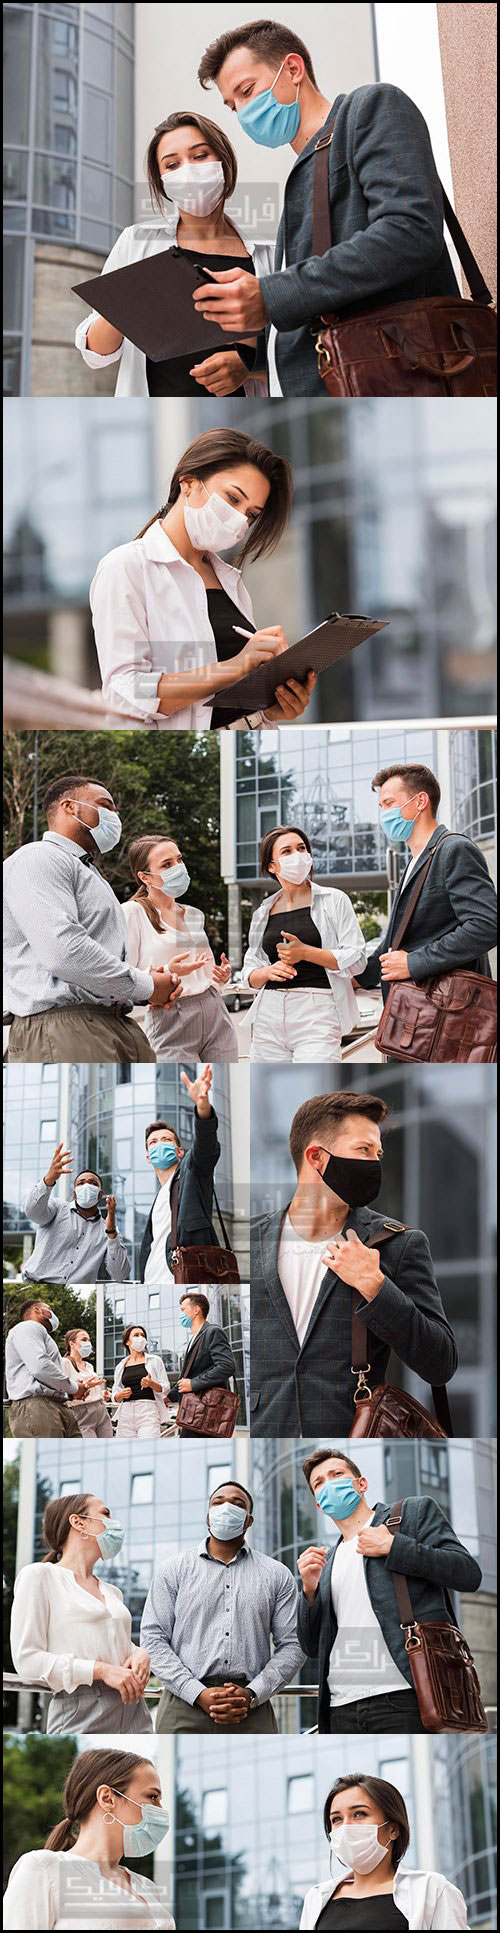 دانلود تصاویر استوک کارمندان با ماسک